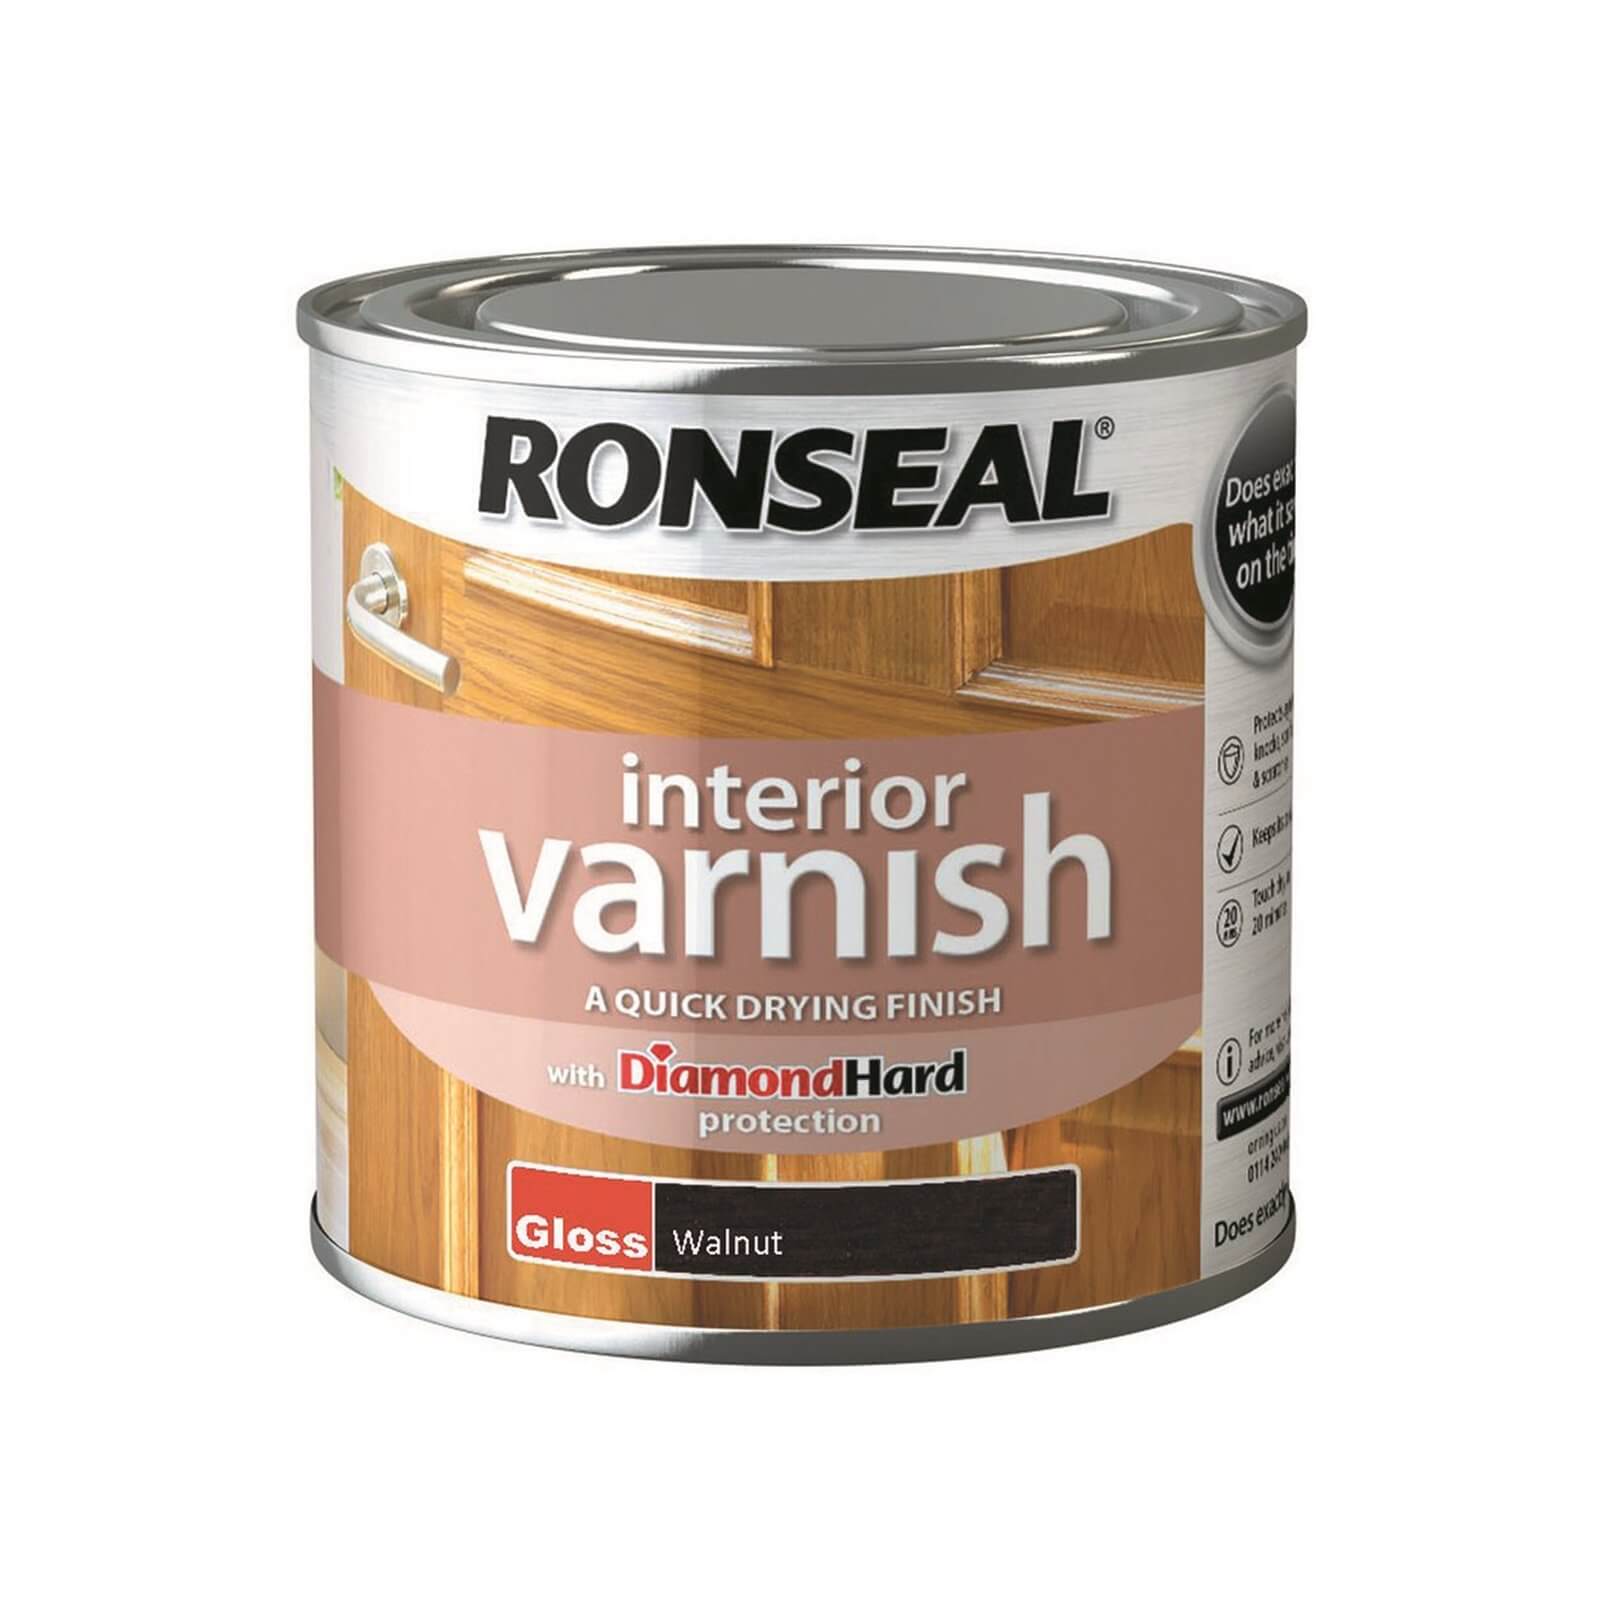 Ronseal Interior Varnish Gloss Walnut - 250ml